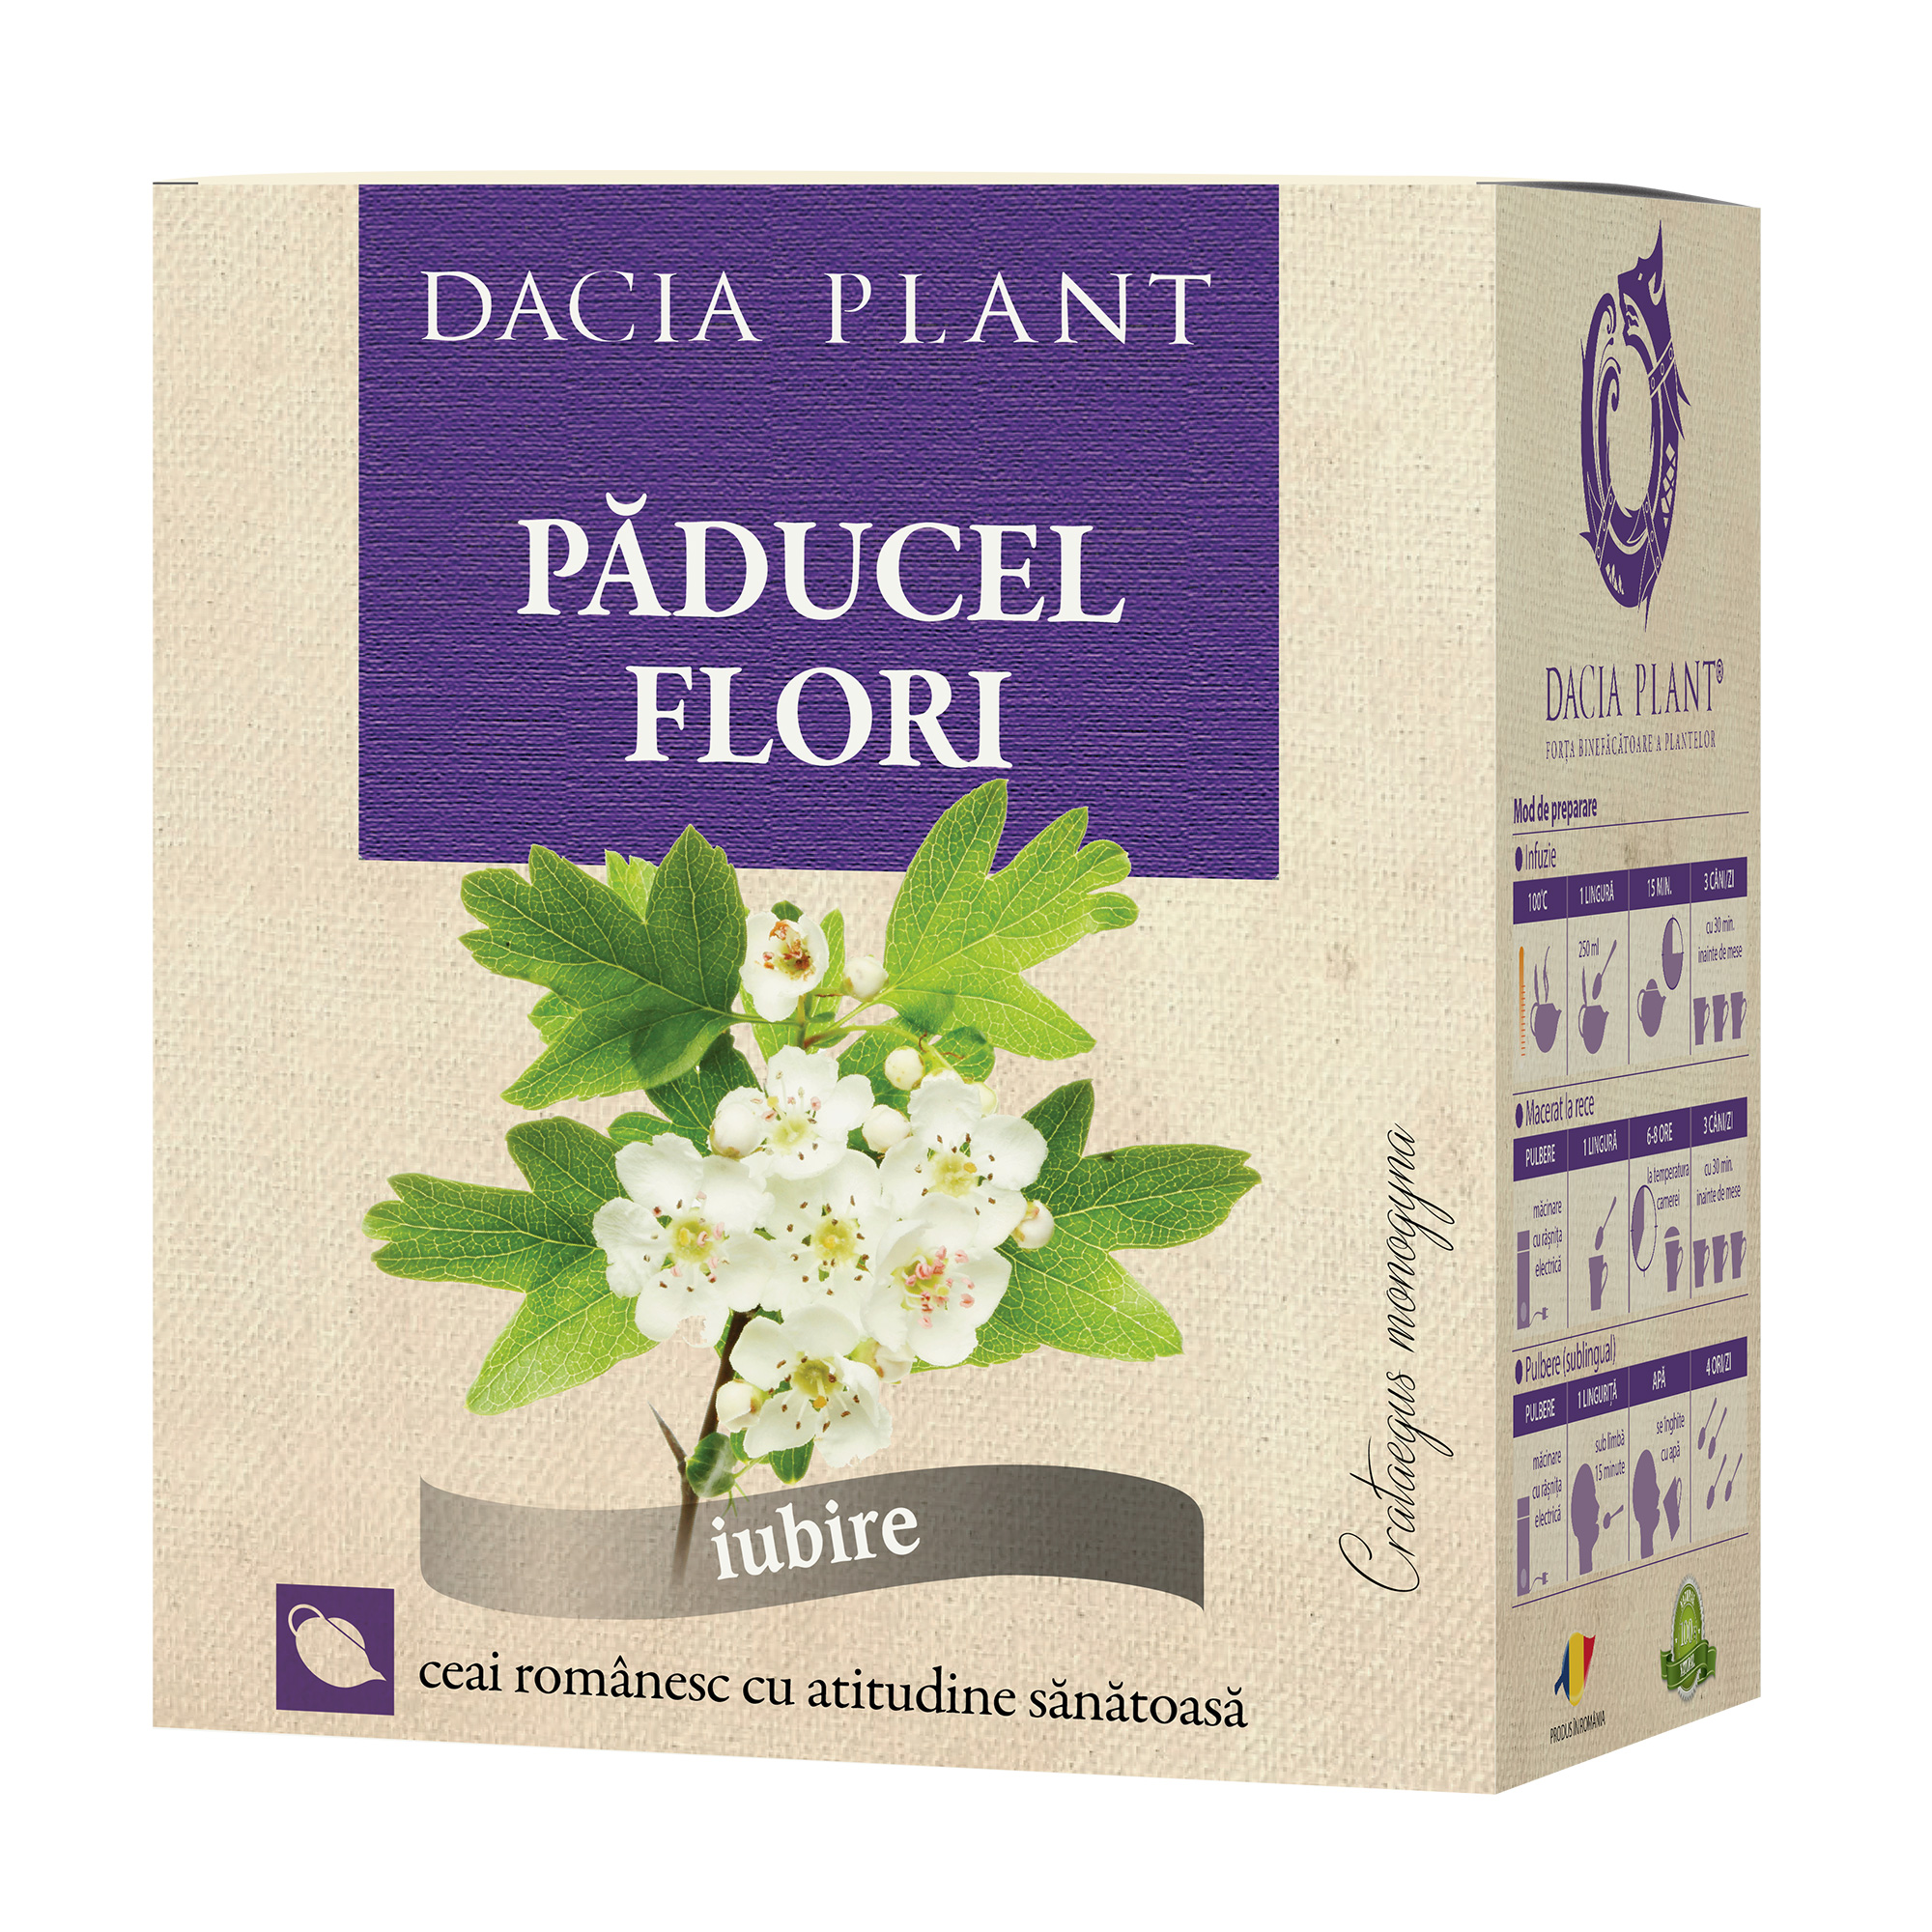 Ceai de Paducel flori Dacia Plant imagine noua